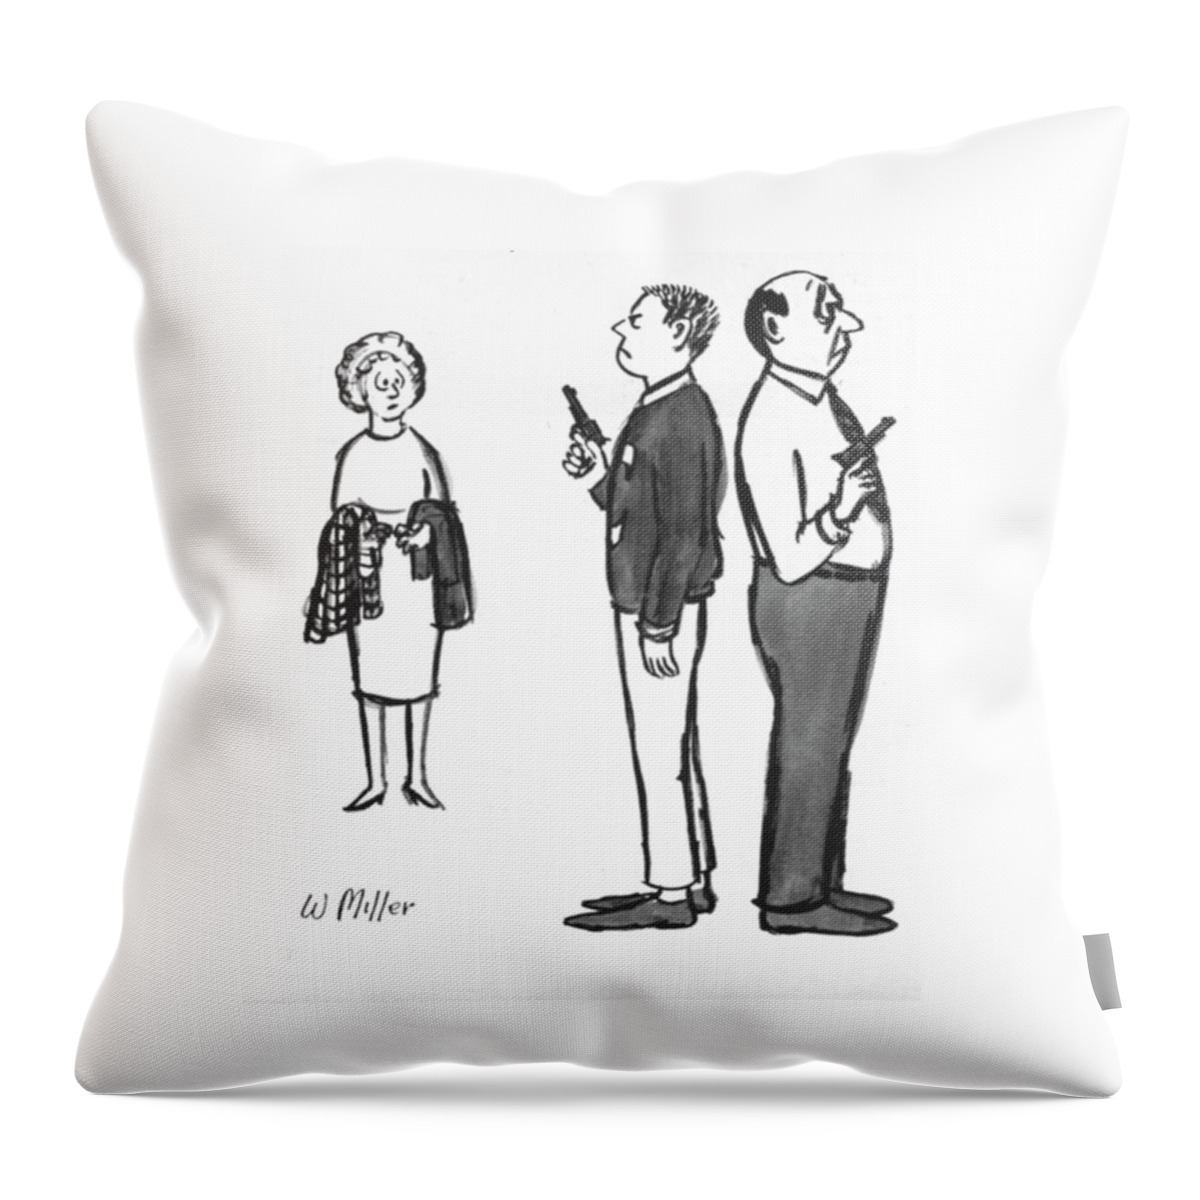 New Yorker December 5, 1964 Throw Pillow